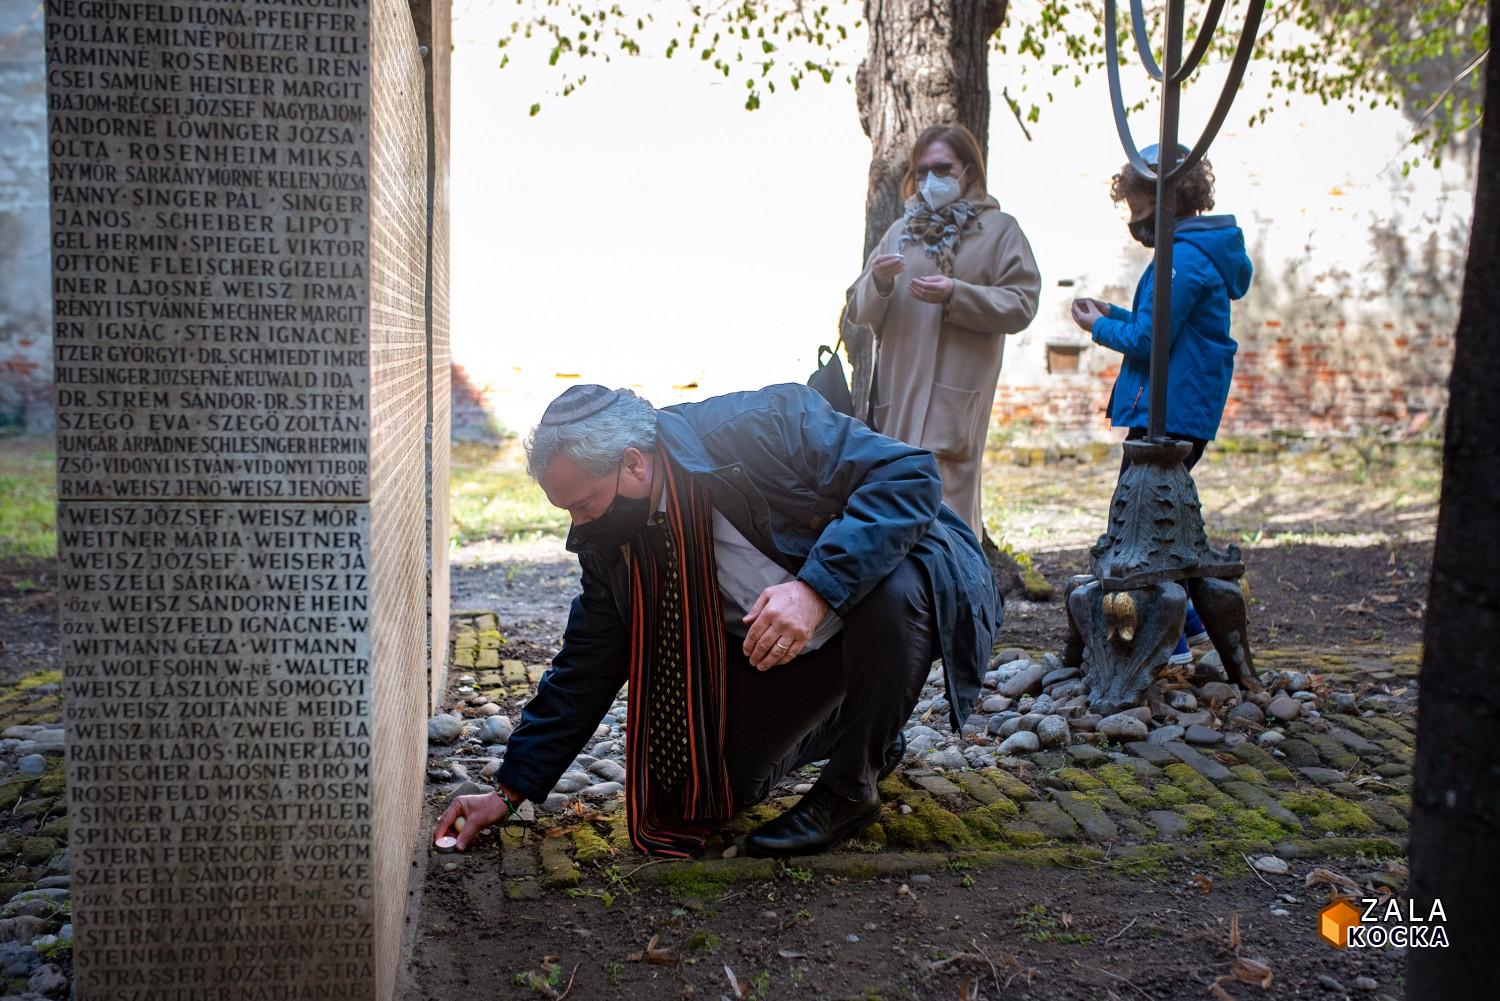 A polgármester is megemlékezett a holokauszt kanizsai és magyar áldozatairól